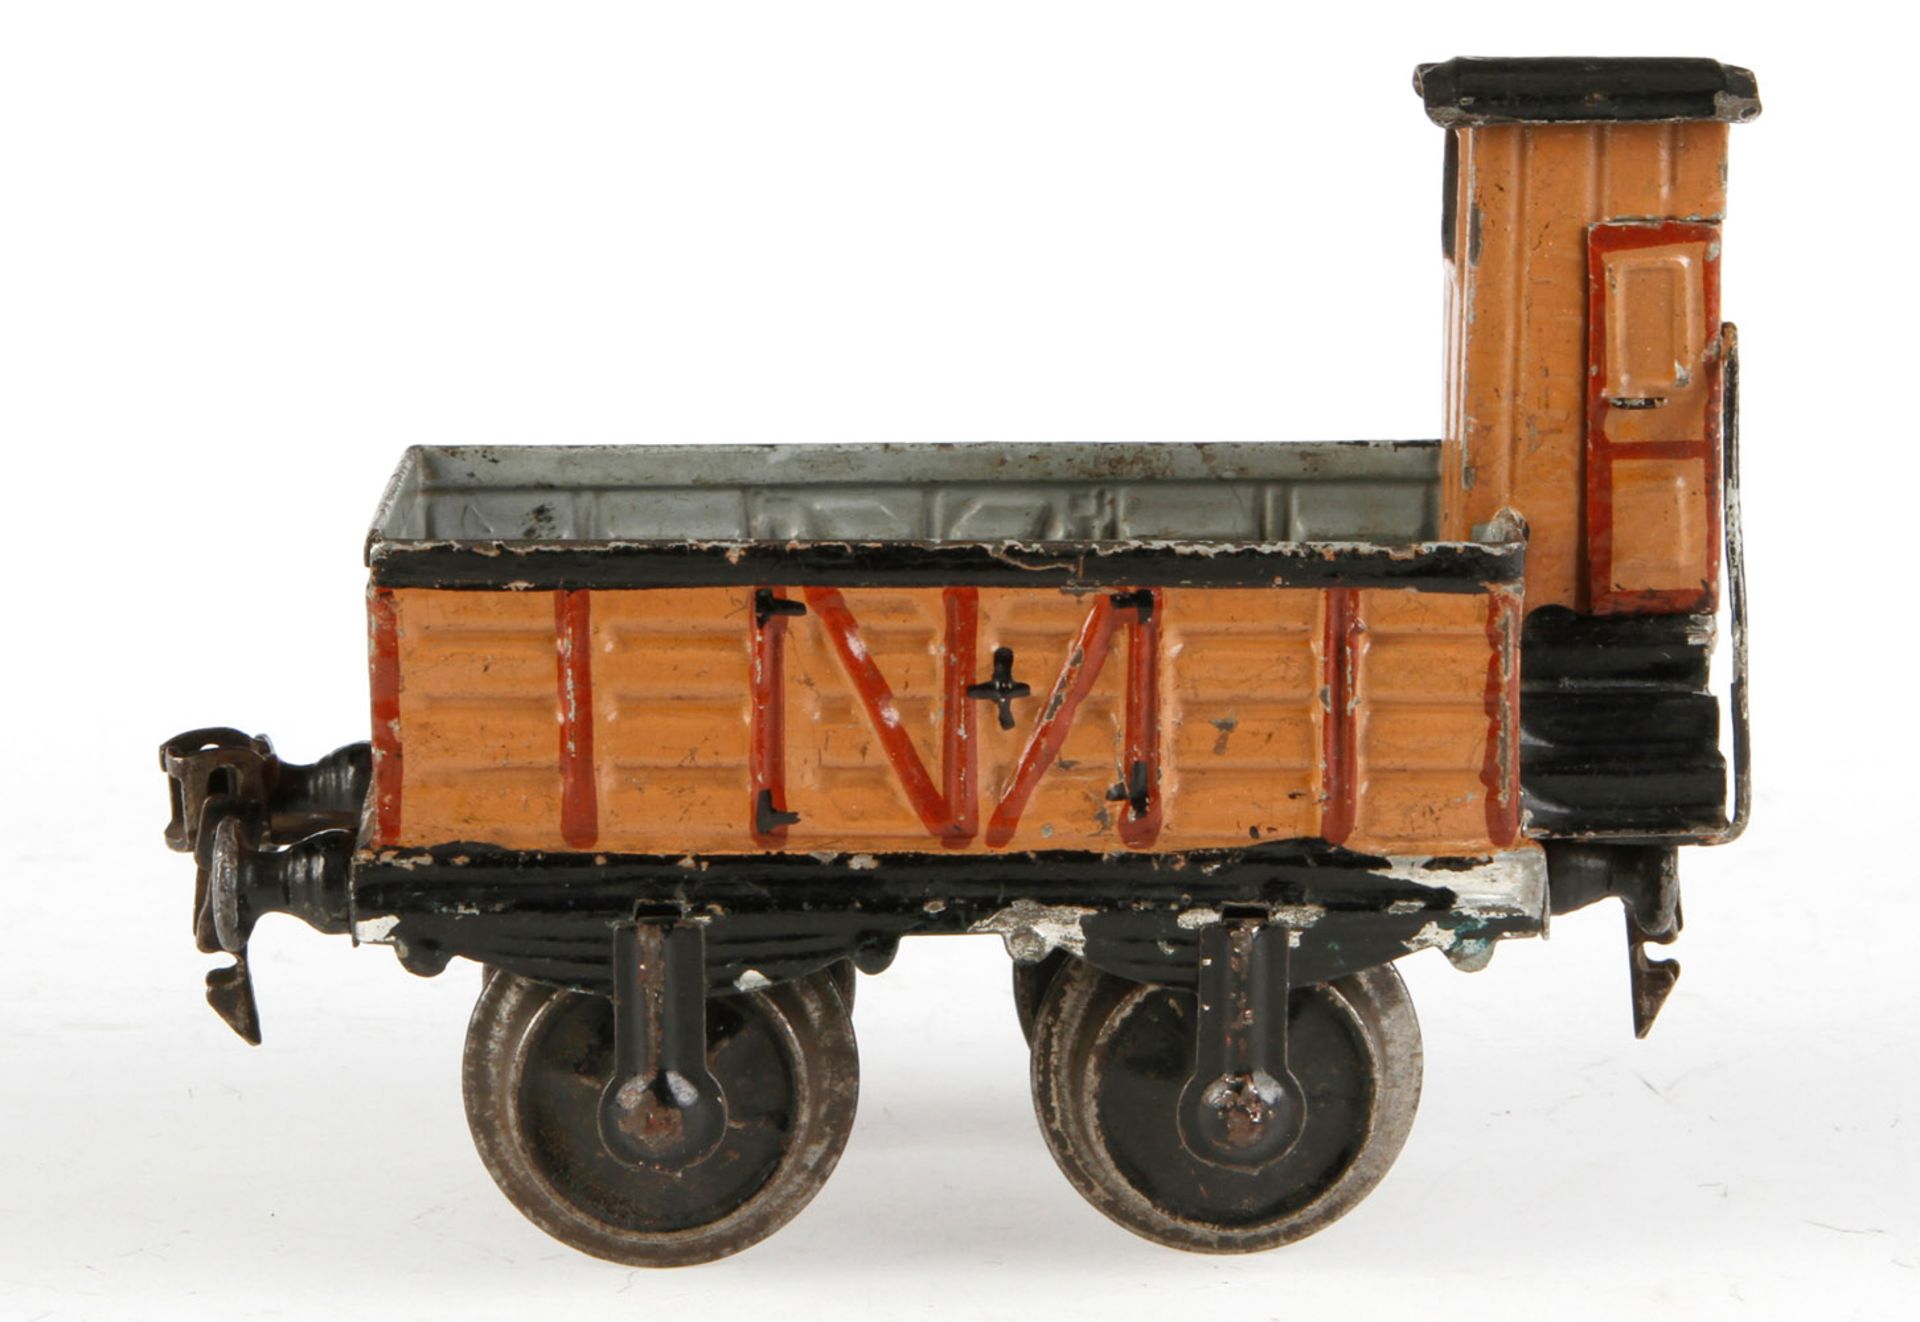 Märklin offener Güterwagen 1817, S 1, uralt, HL, mit BRHh, LS und gealterter Lack, L 13, Z 2-3